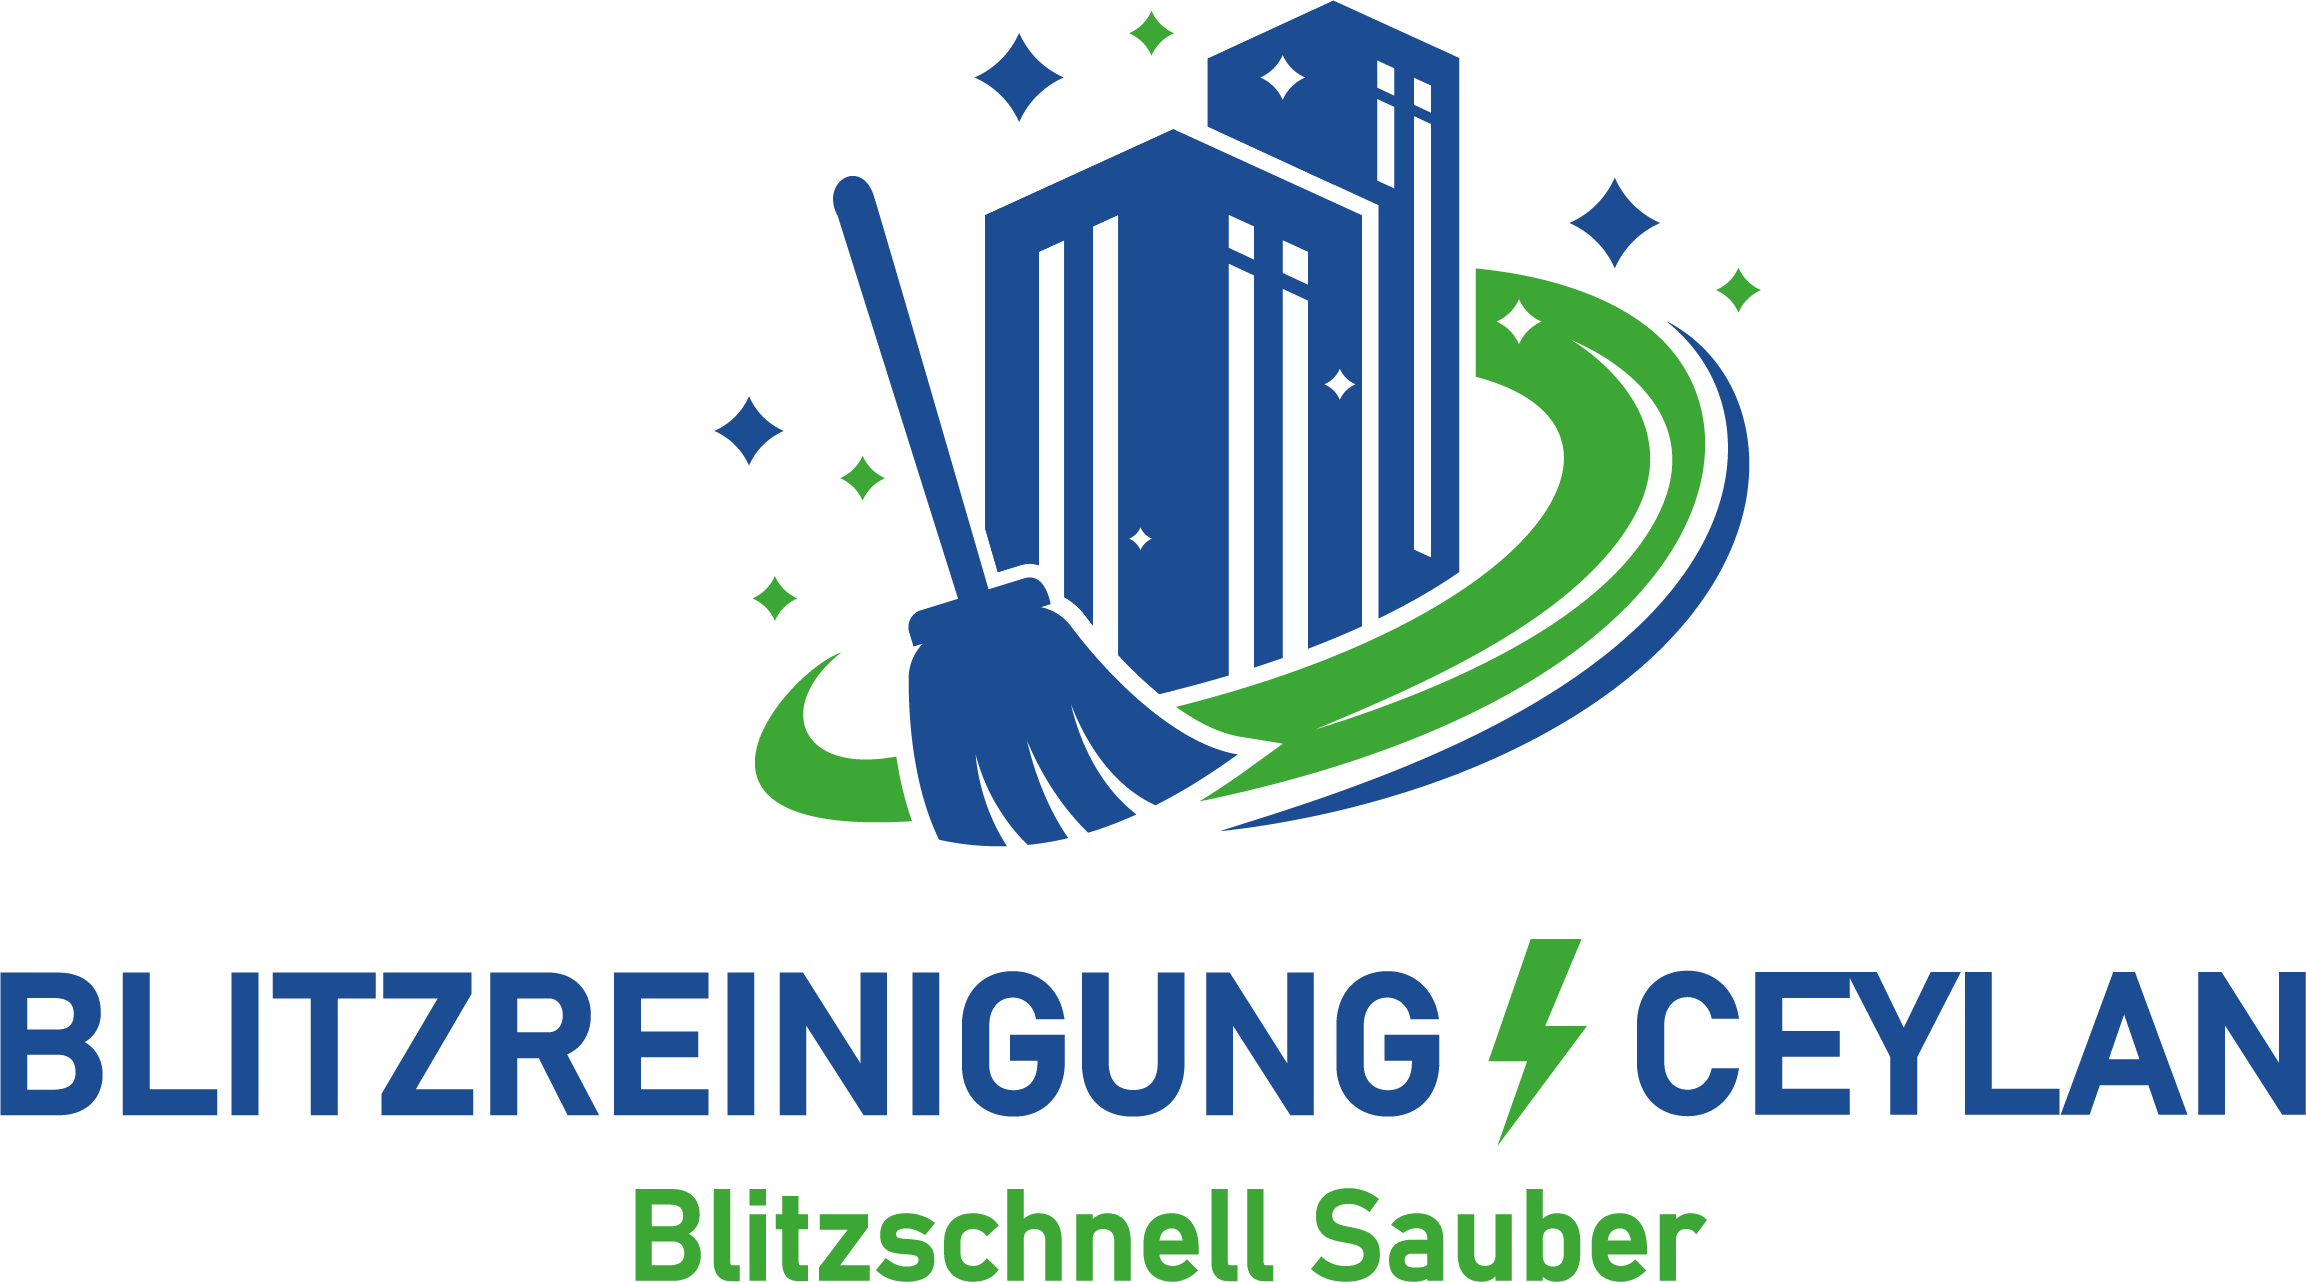 Blitzreinigung Ceylan - Ihr professioneller Dienstleister aus Siegburg